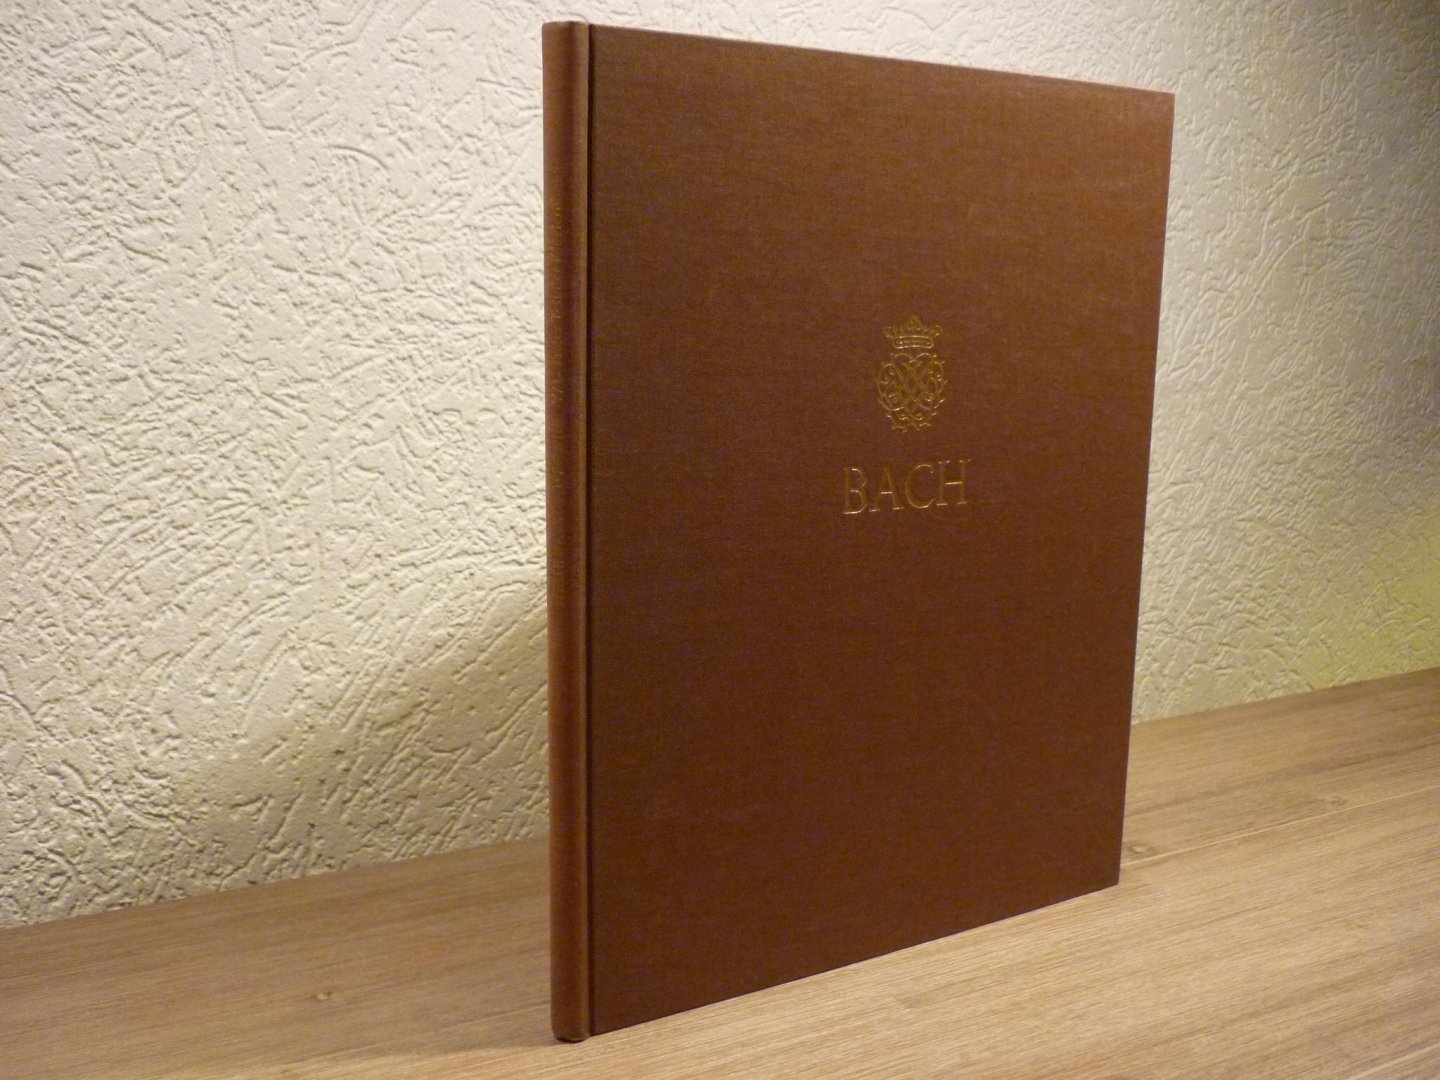 Bach; J. S. (1685-1750) - Bach, Johann SebastianErster Teil der Klavierübung. Sechs Partiten BWV 825-830; Klavier- und Lautenwerke, Band 1; Neue Ausgabe sämtlicher Werke